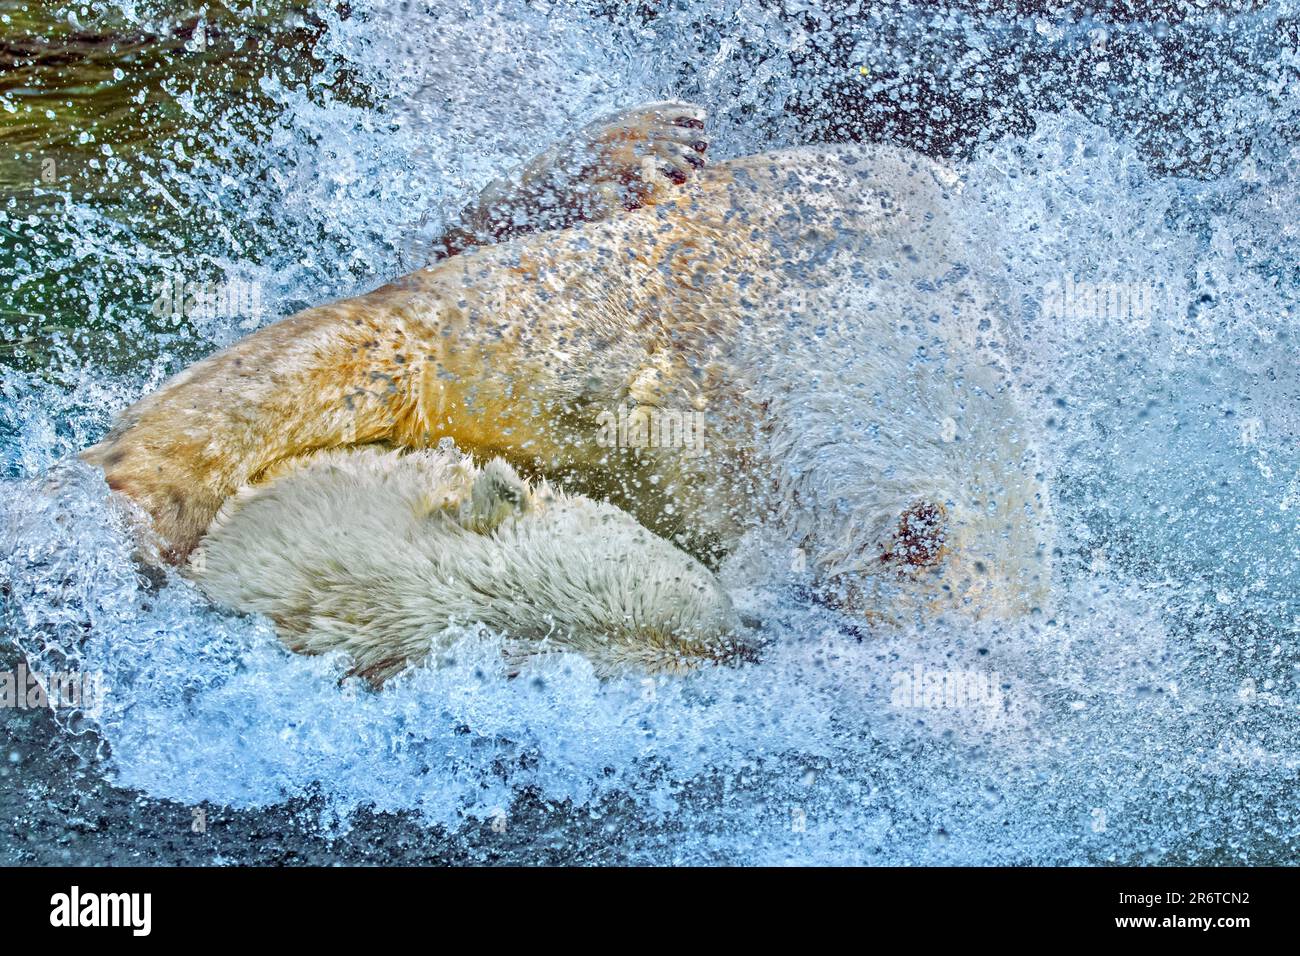 Deux ours polaires (Ursus maritimus) éclaboussant de l'eau tout en jouant à la bagarre / jouer à la piscine dans le zoo lors d'une journée chaude en été Banque D'Images